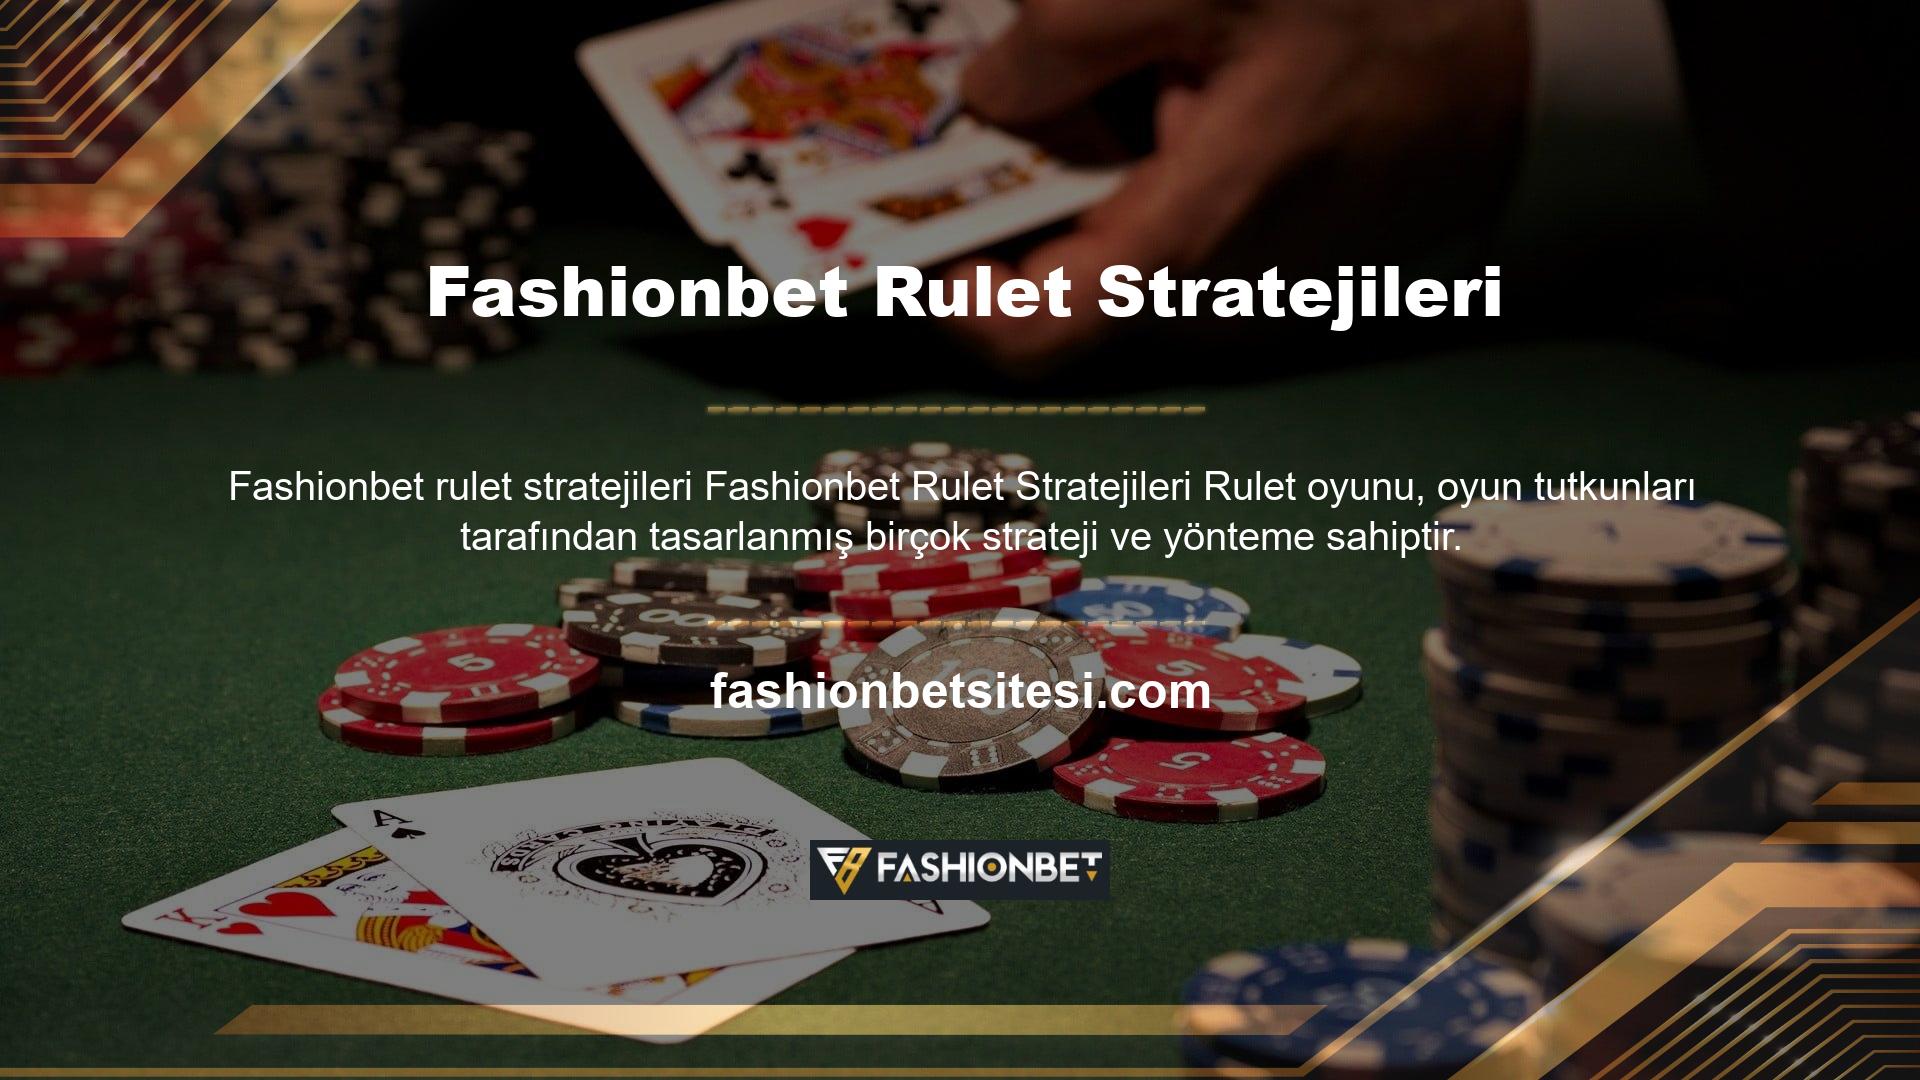 Fashionbet rulette bahis oynayan kişiler bu stratejileri kullanarak oyunu kazanma şanslarını arttırmaktadır